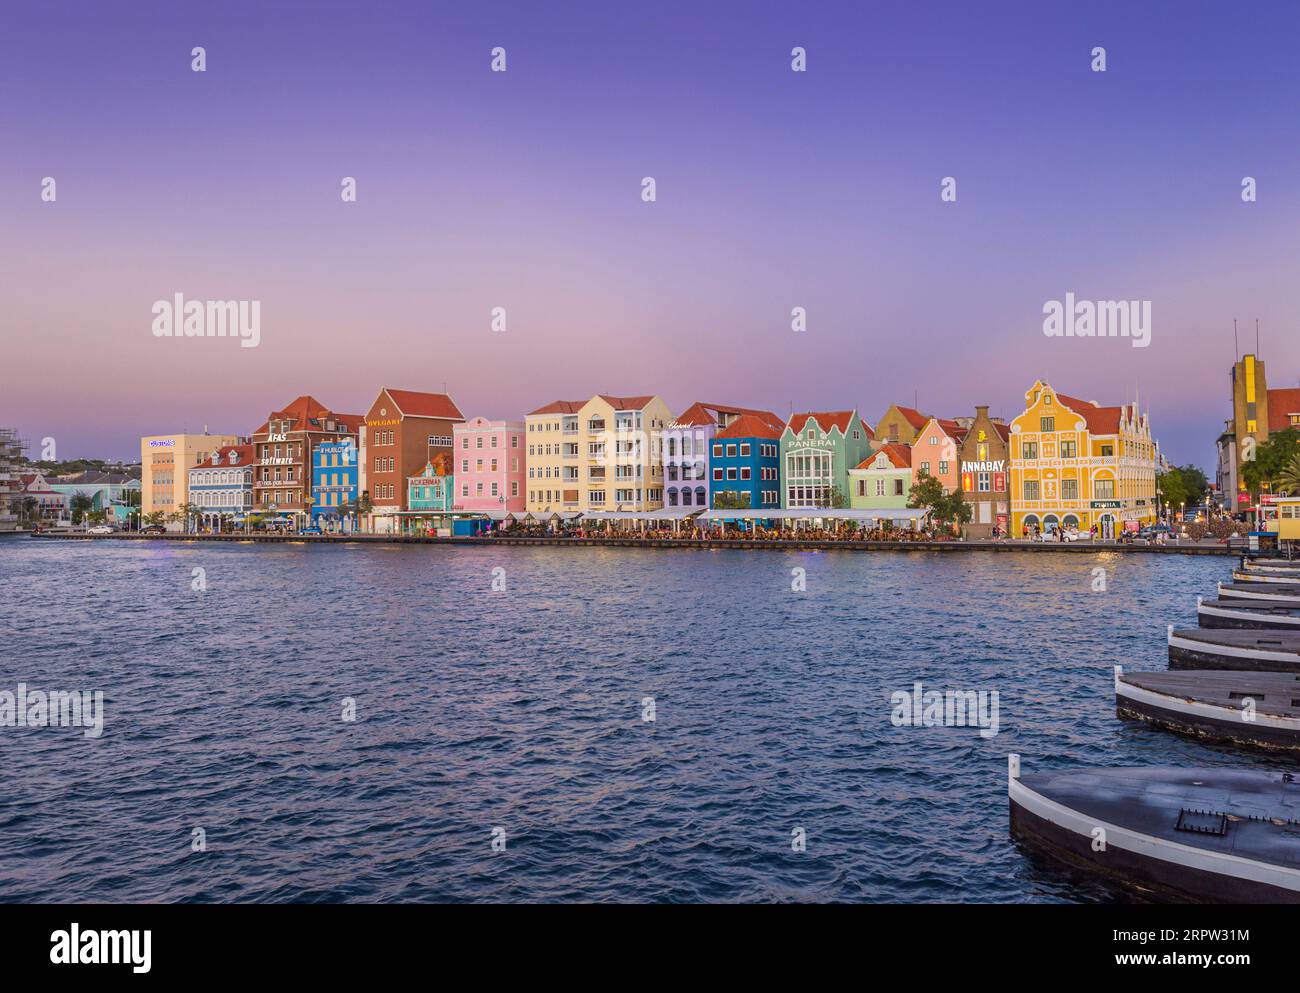 Willemstad, Curazao Capital de la isla caribeña holandesa Curazao Foto de stock